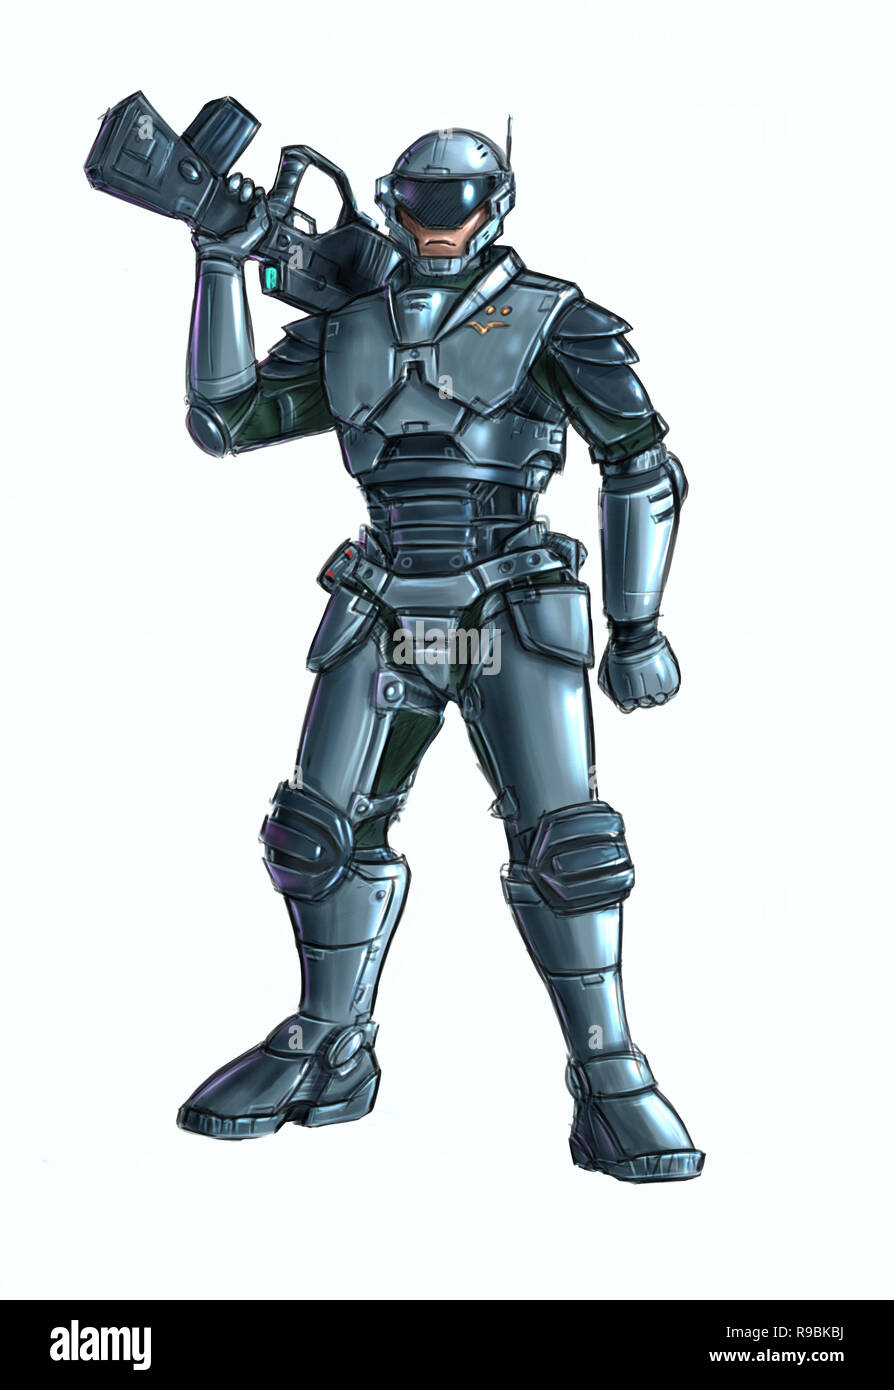 armor concept art